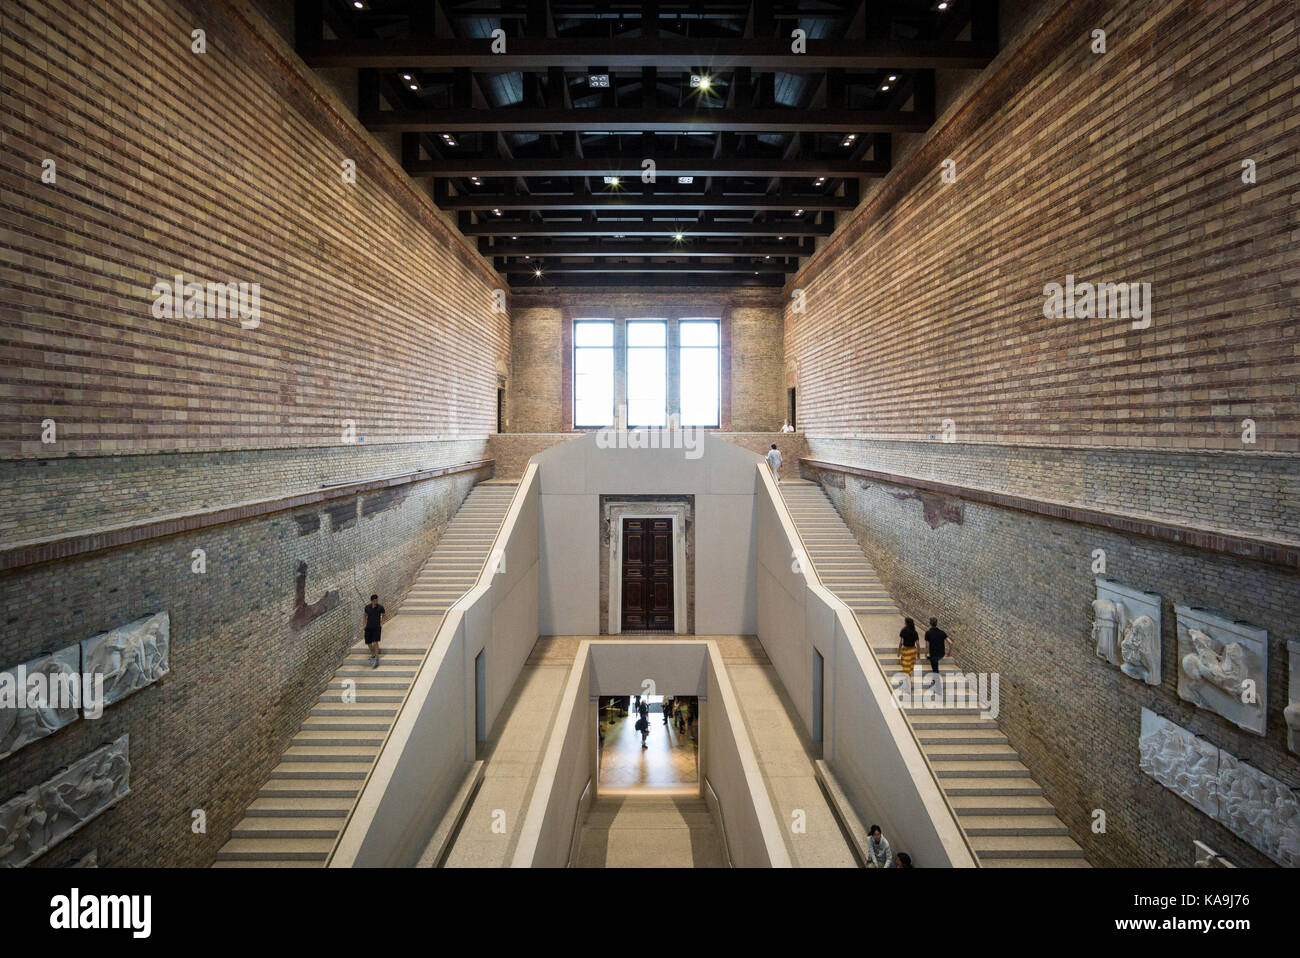 Berlin. L'Allemagne. Le Neues Museum (nouveau musée), l'île aux musées, hall d'escalier principal par David Chipperfield Architects en collaboration avec Julian Harra Banque D'Images